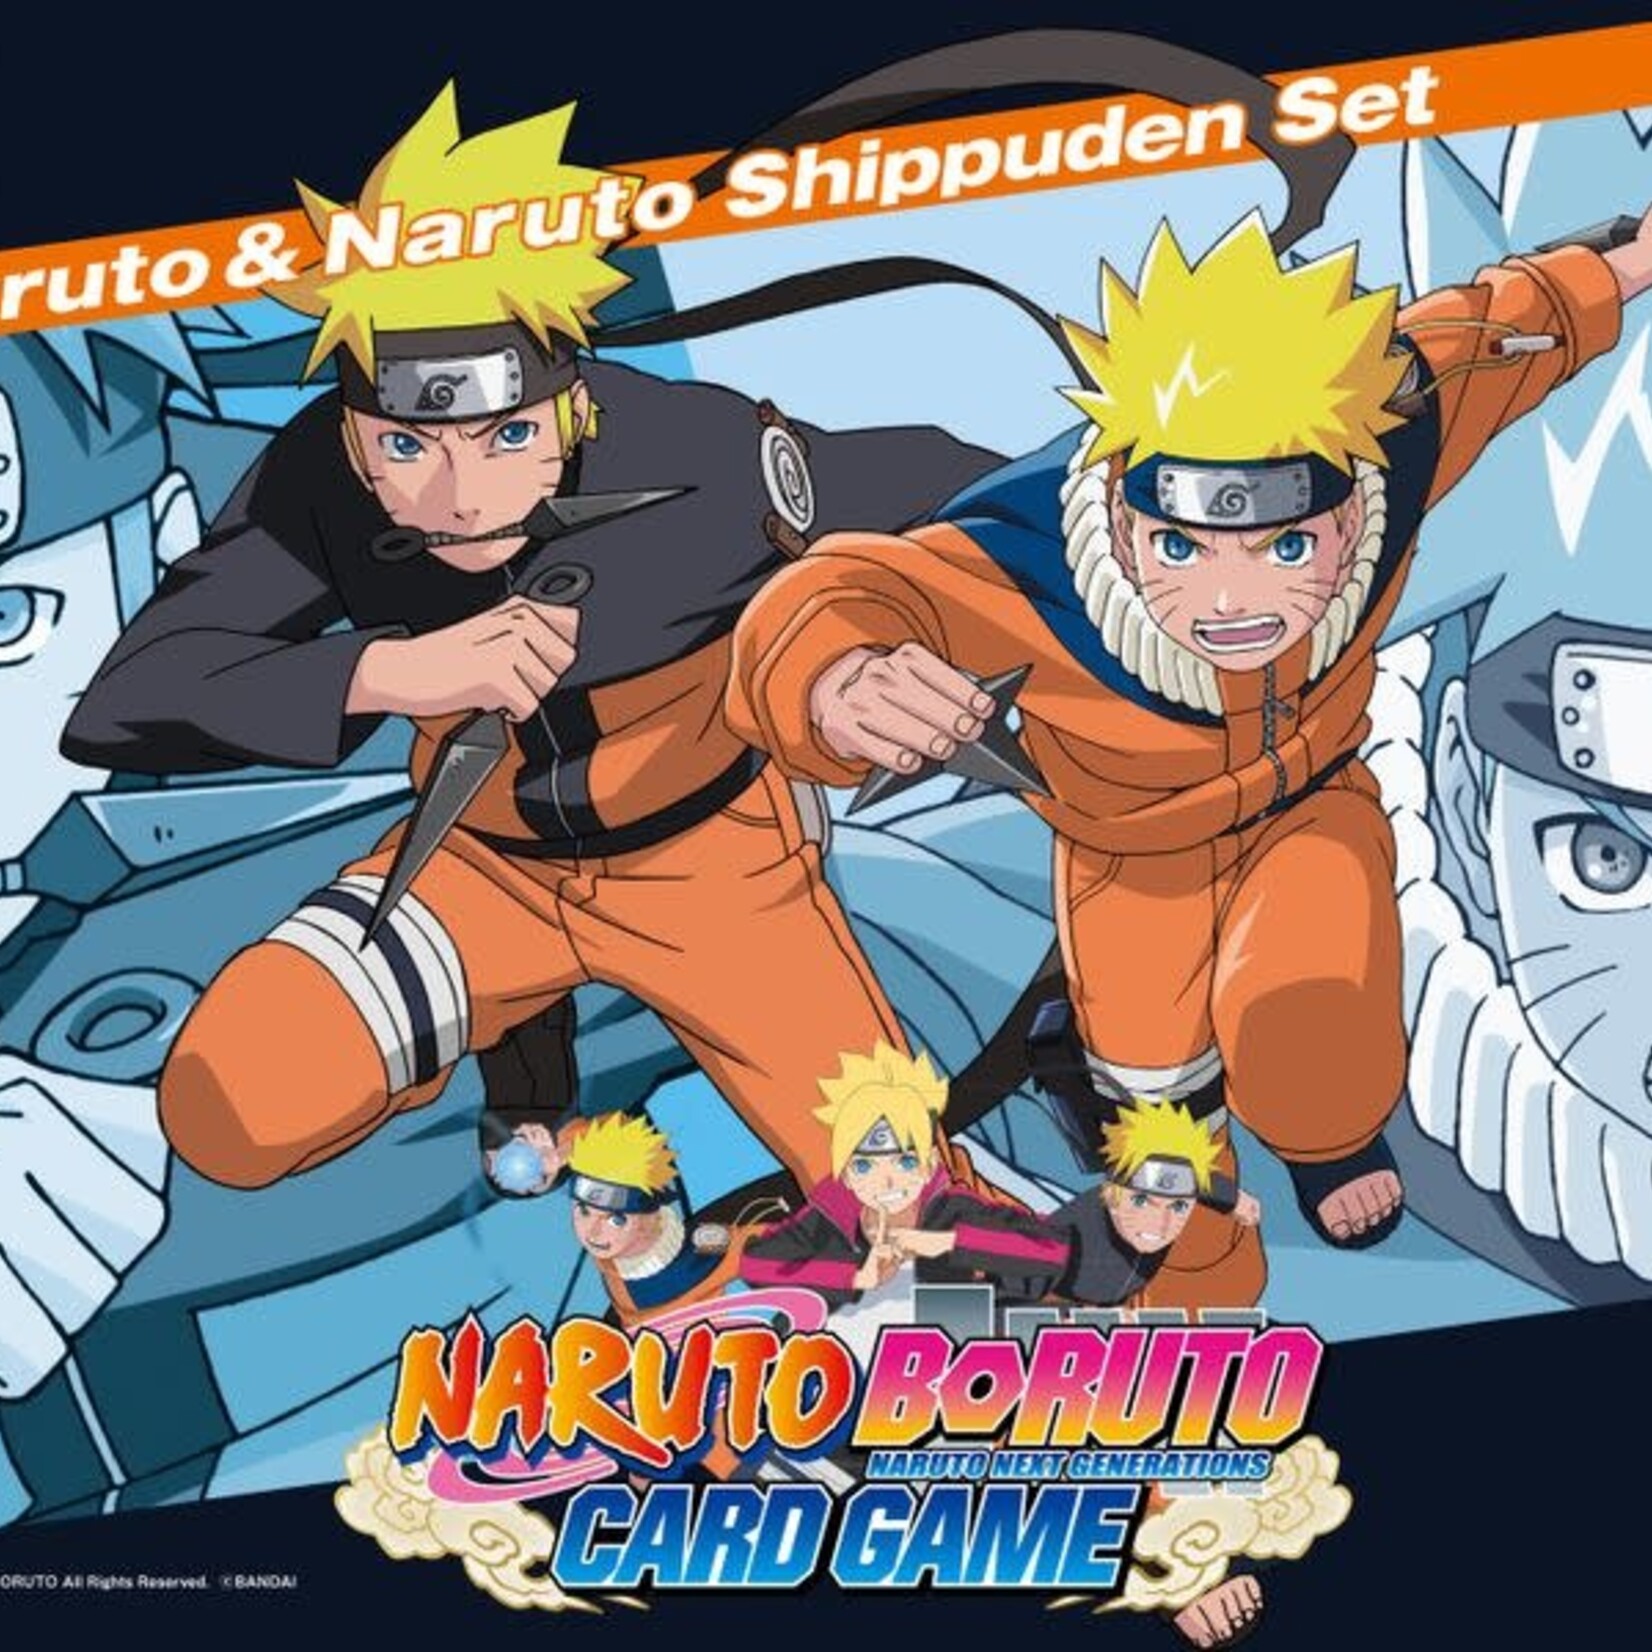 Bandai Naruto Boruto 2-Player Card Game: Naruto & Naruto Shippuden Set